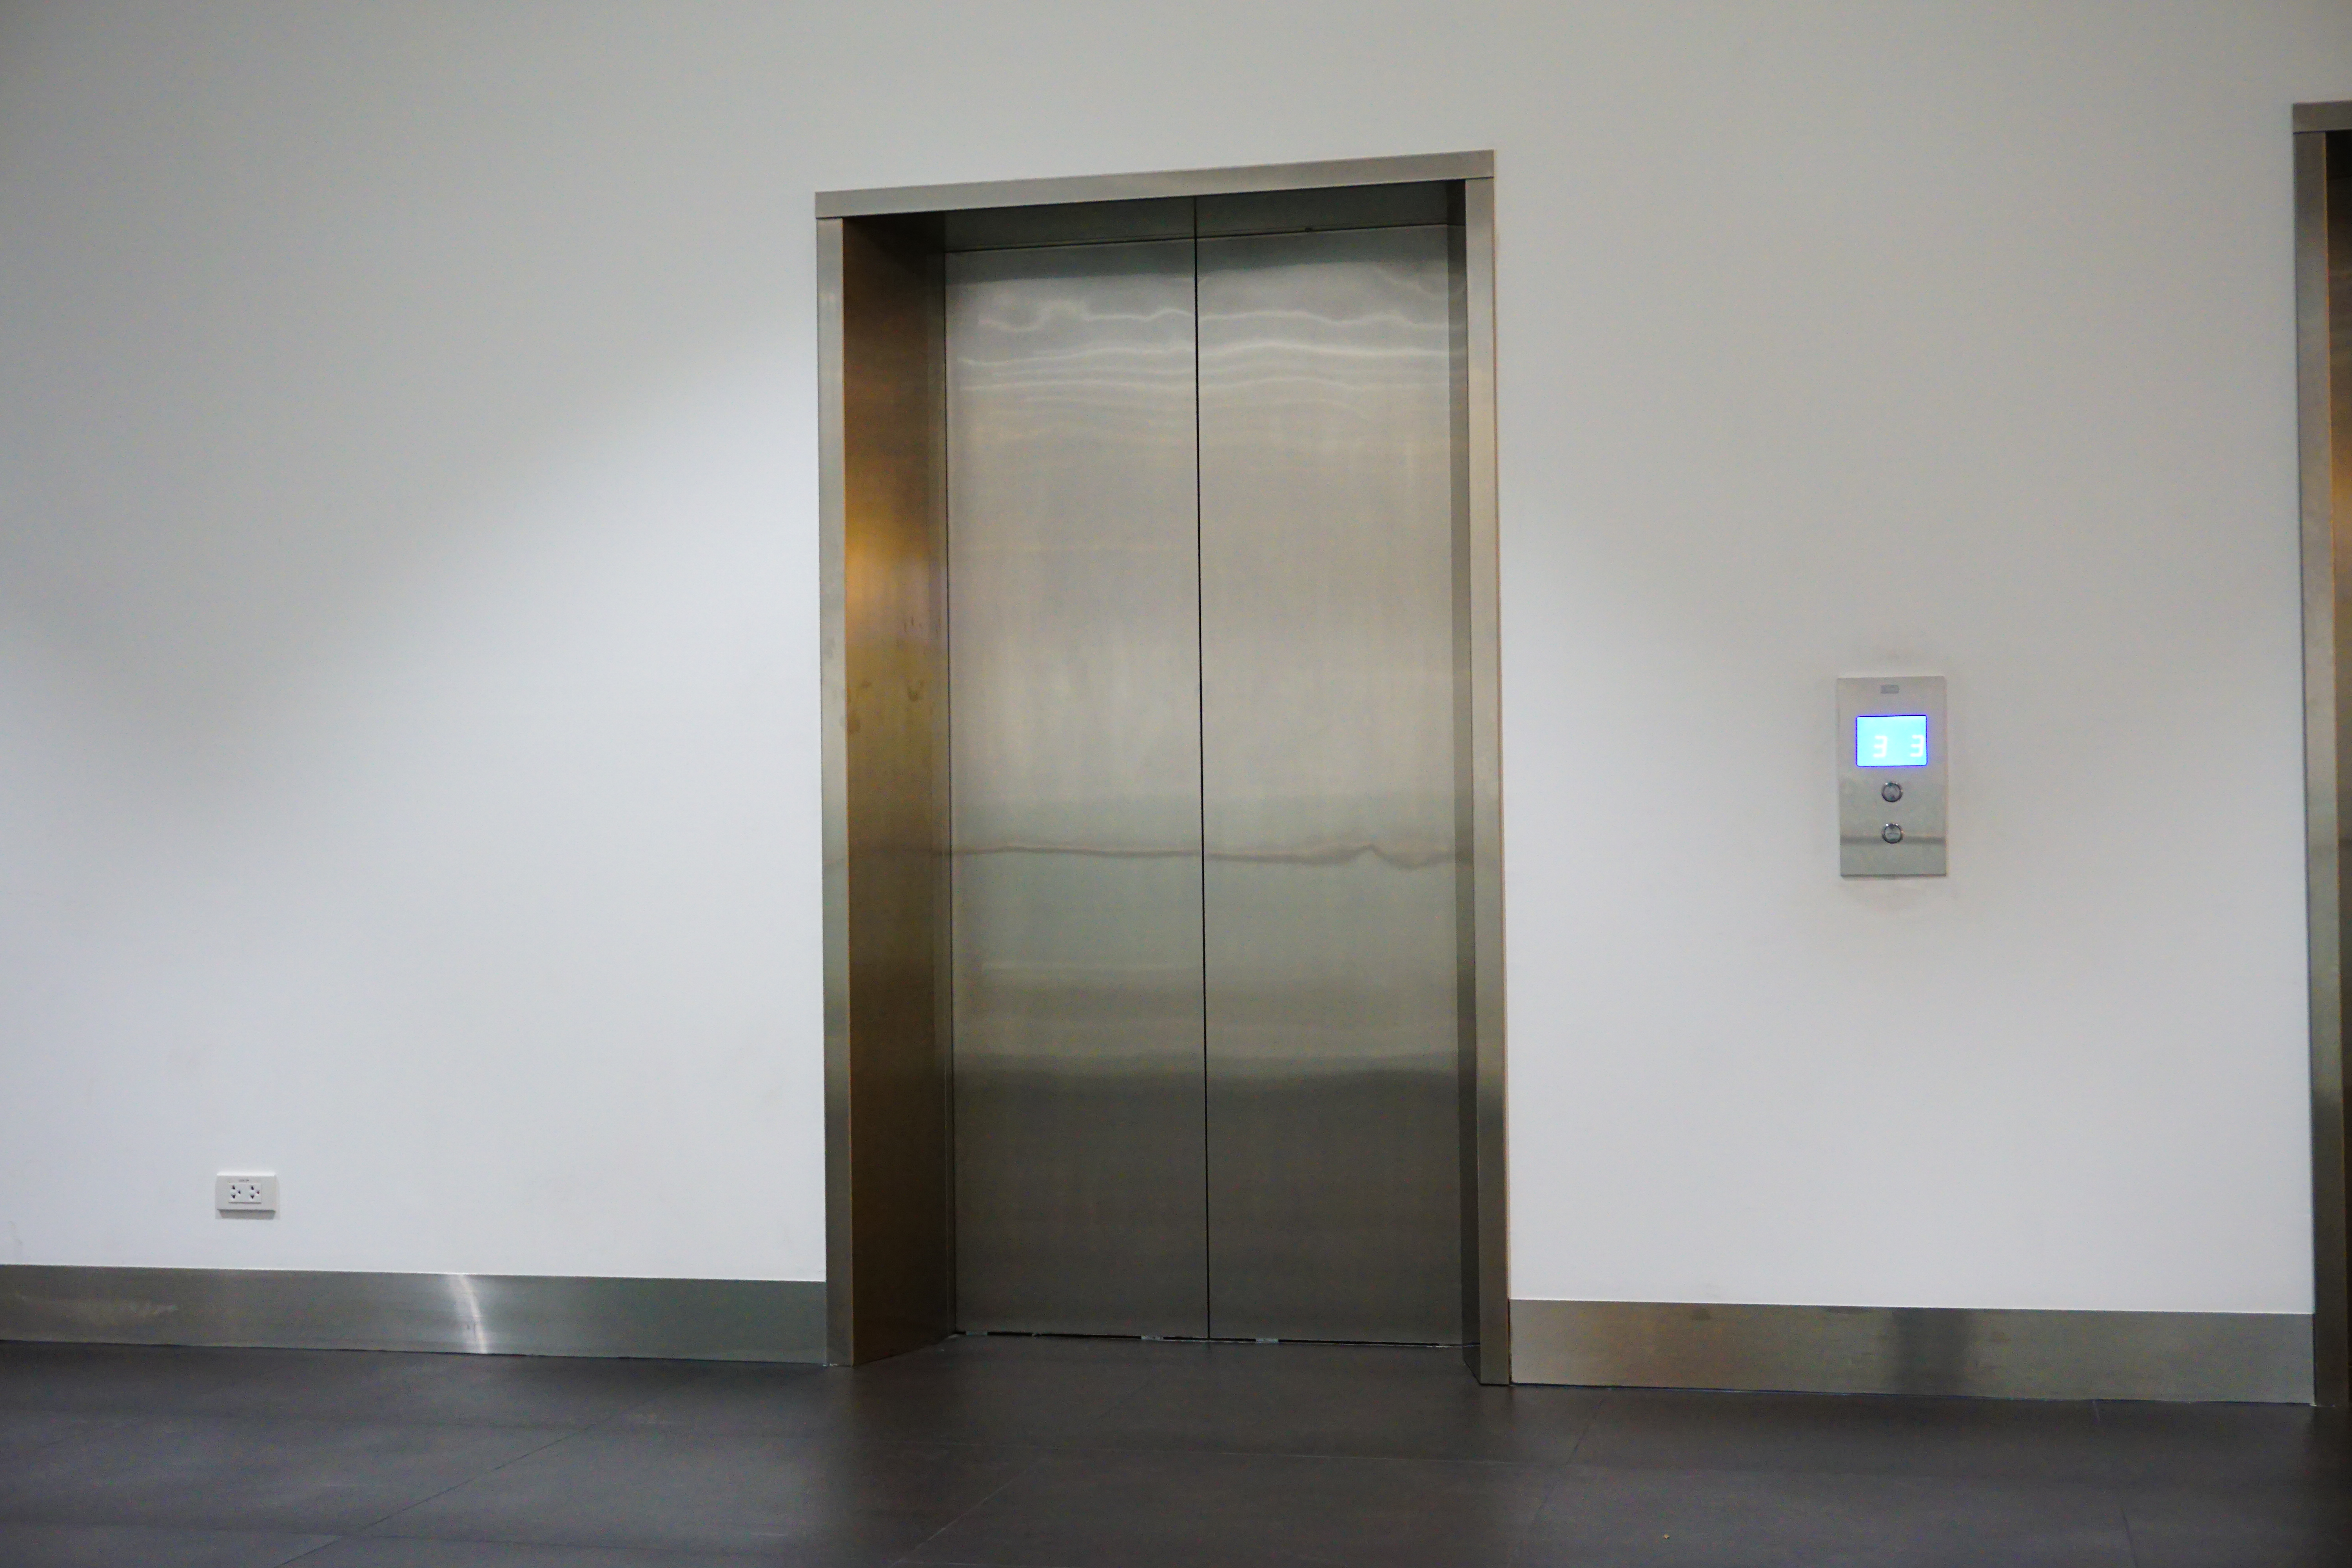 Kone elevadores refuerza su posición en Madrid con la adquisición de la empresa Ascensores R Casado 